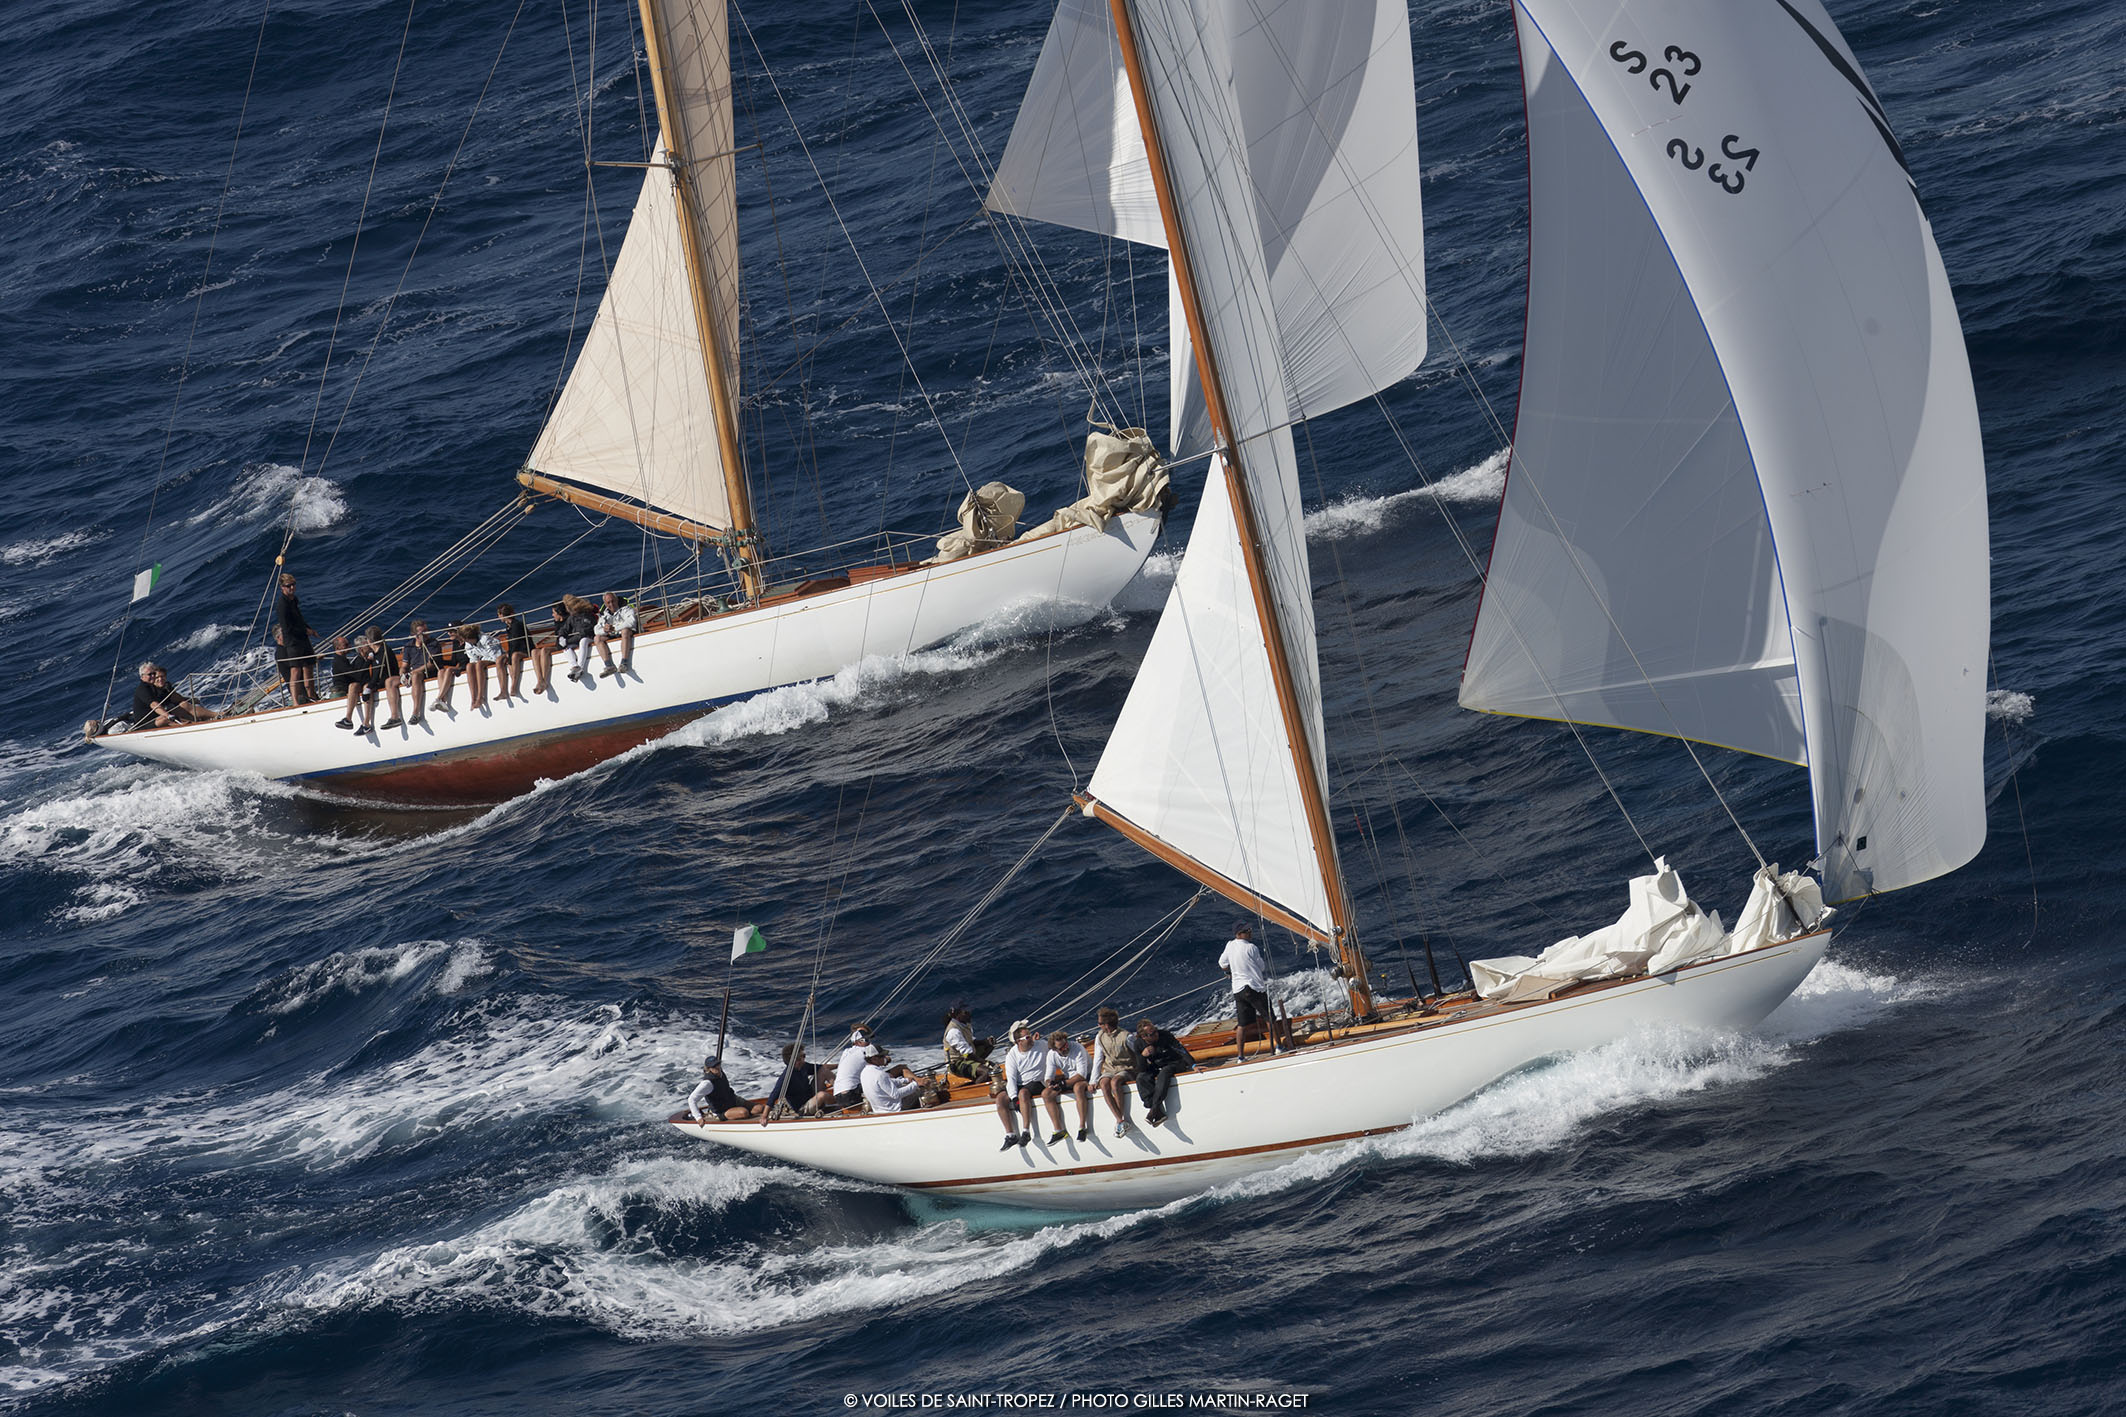 st tropez classic yacht race